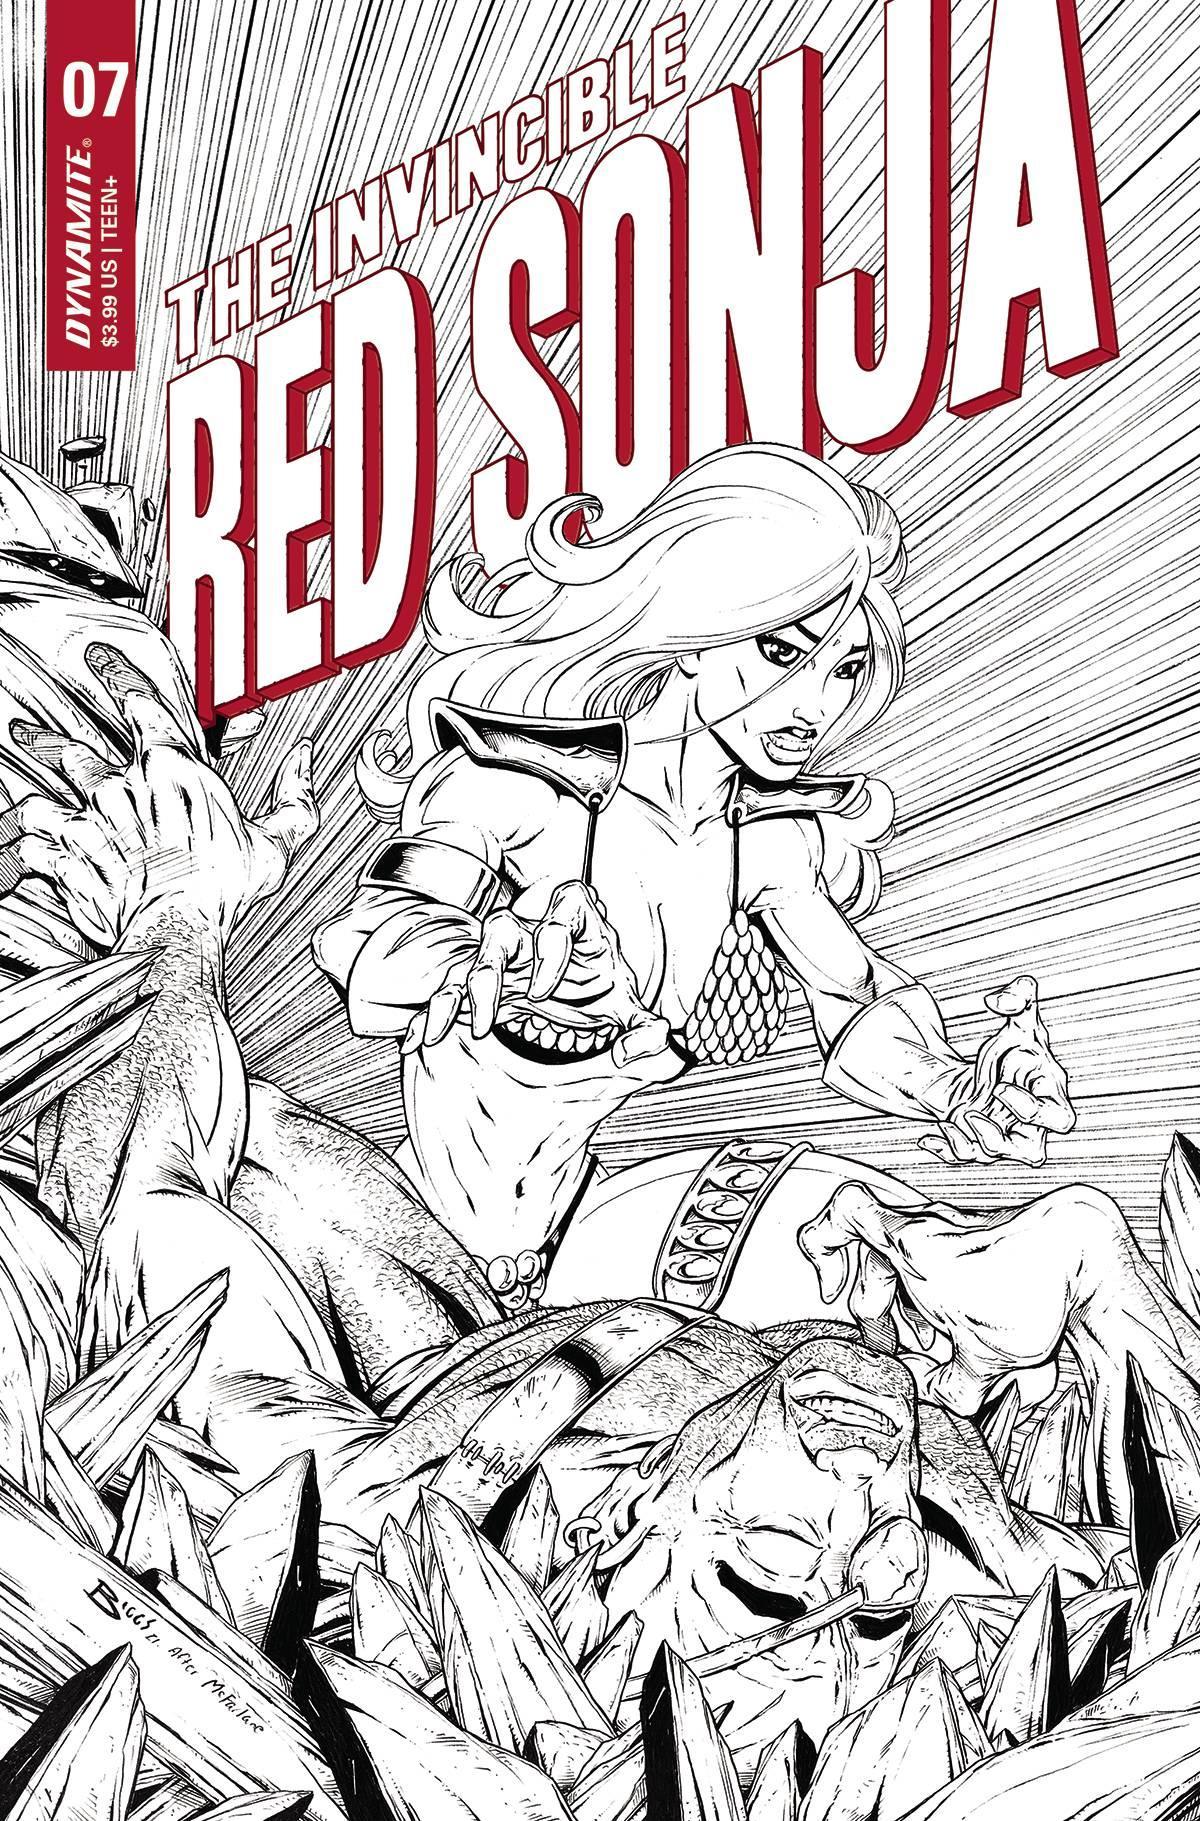 INVINCIBLE RED SONJA #7 CVR Q 11 COPY FOC INCV MCFARLANE HOM - Kings Comics